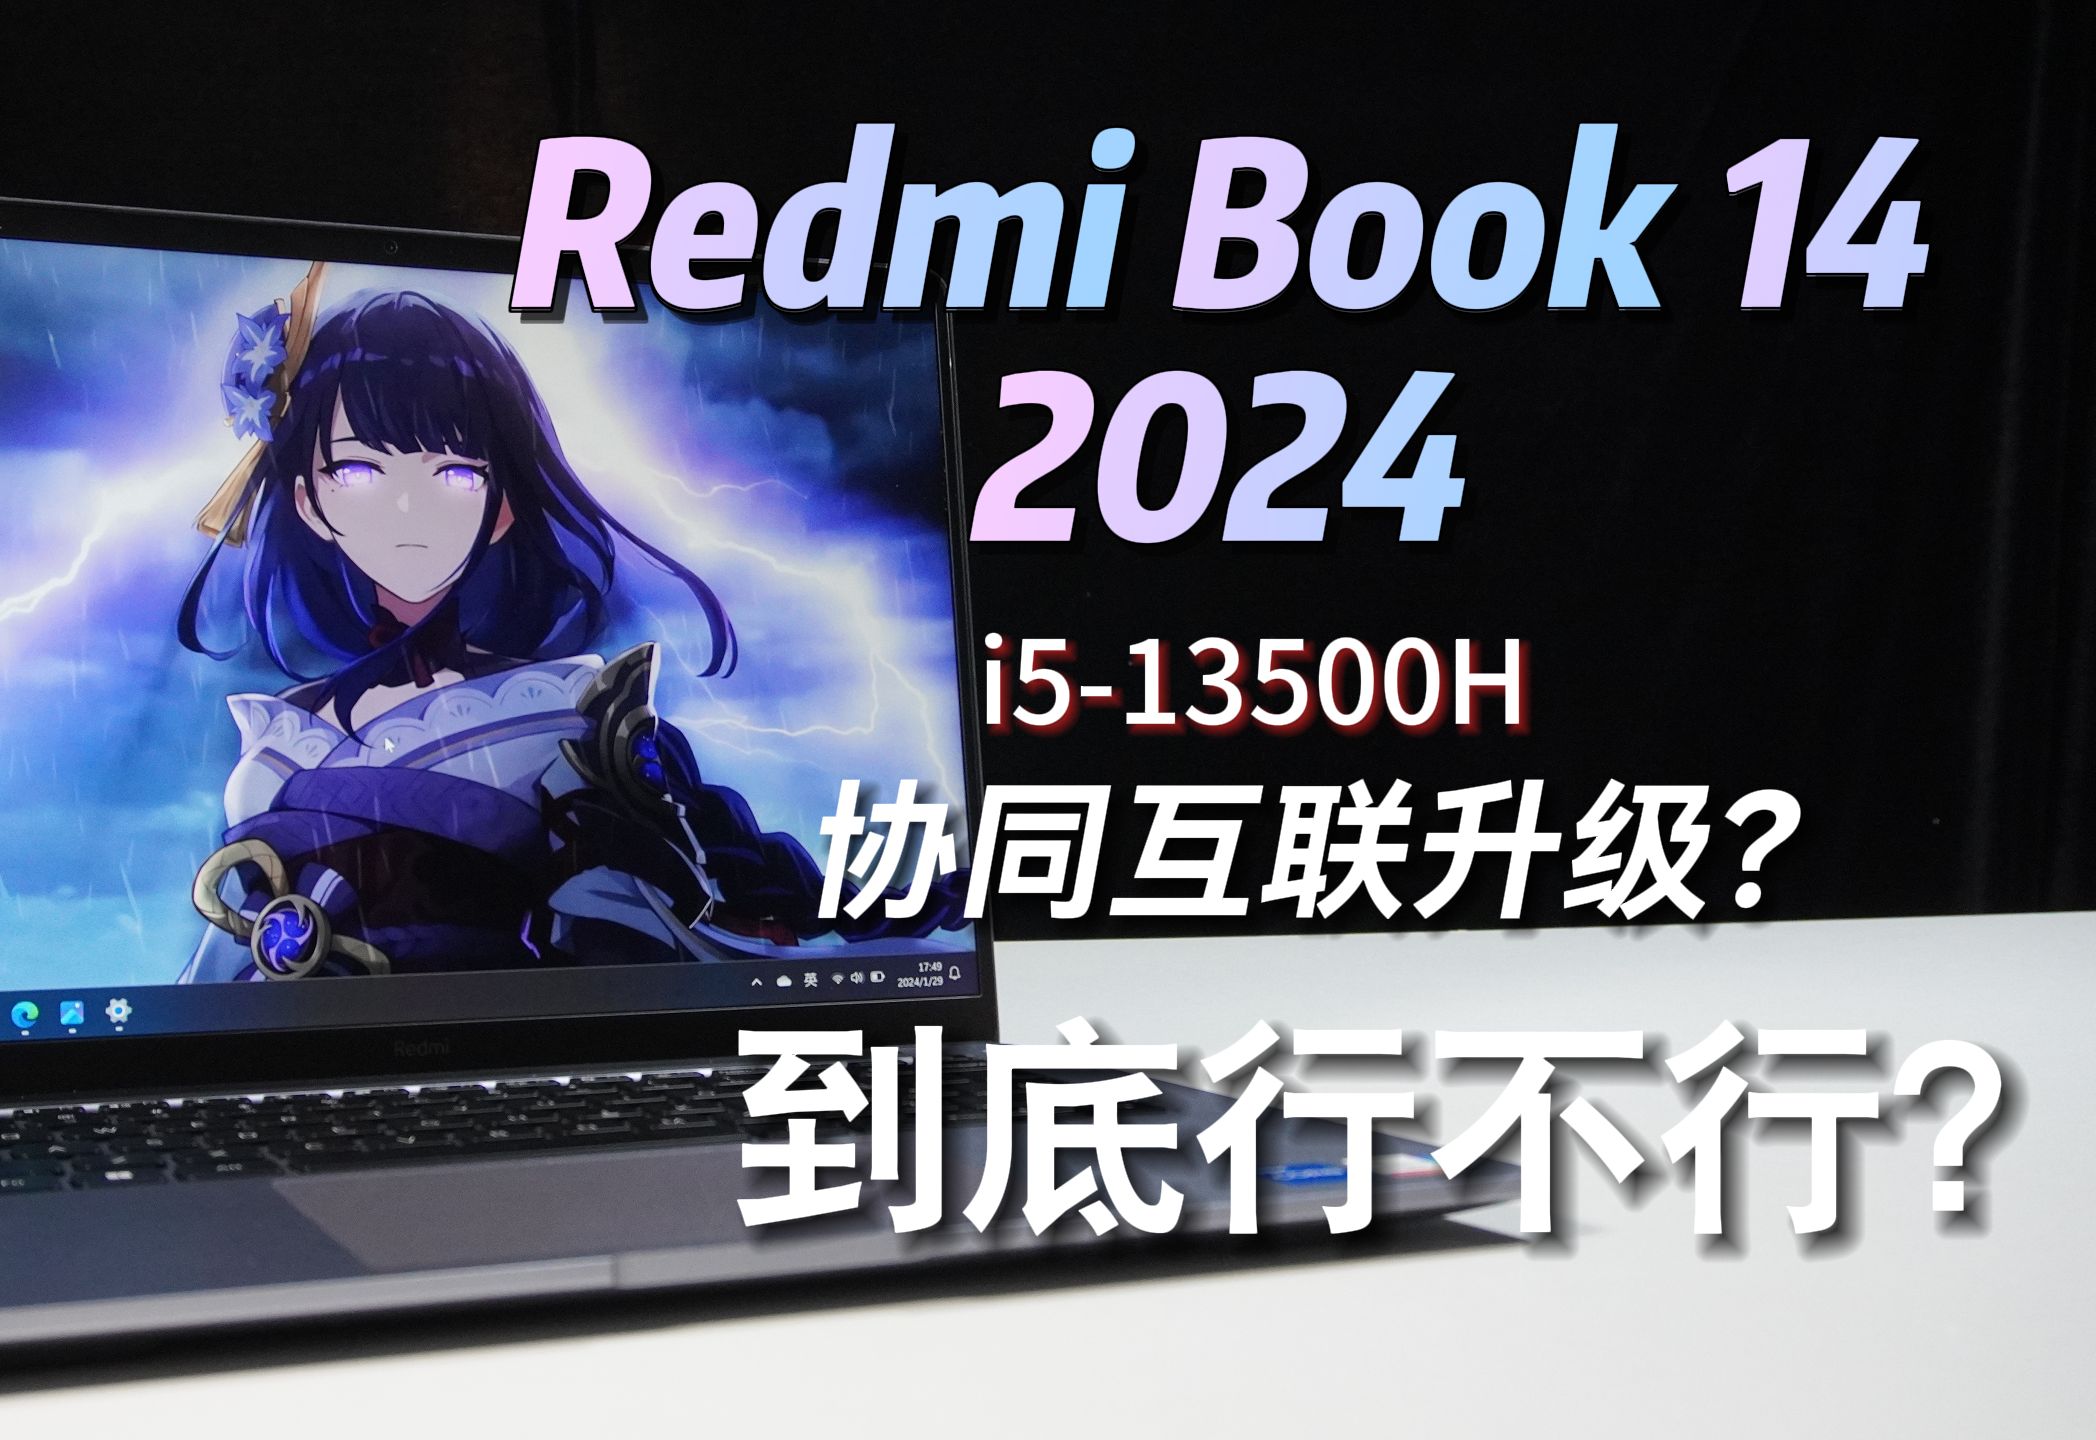 Redmi book 14 2024实机评测 是不是你想要的电脑类型？能畅玩哪些游戏? 手机协同互联有哪些功能？让你新年不花冤枉钱！